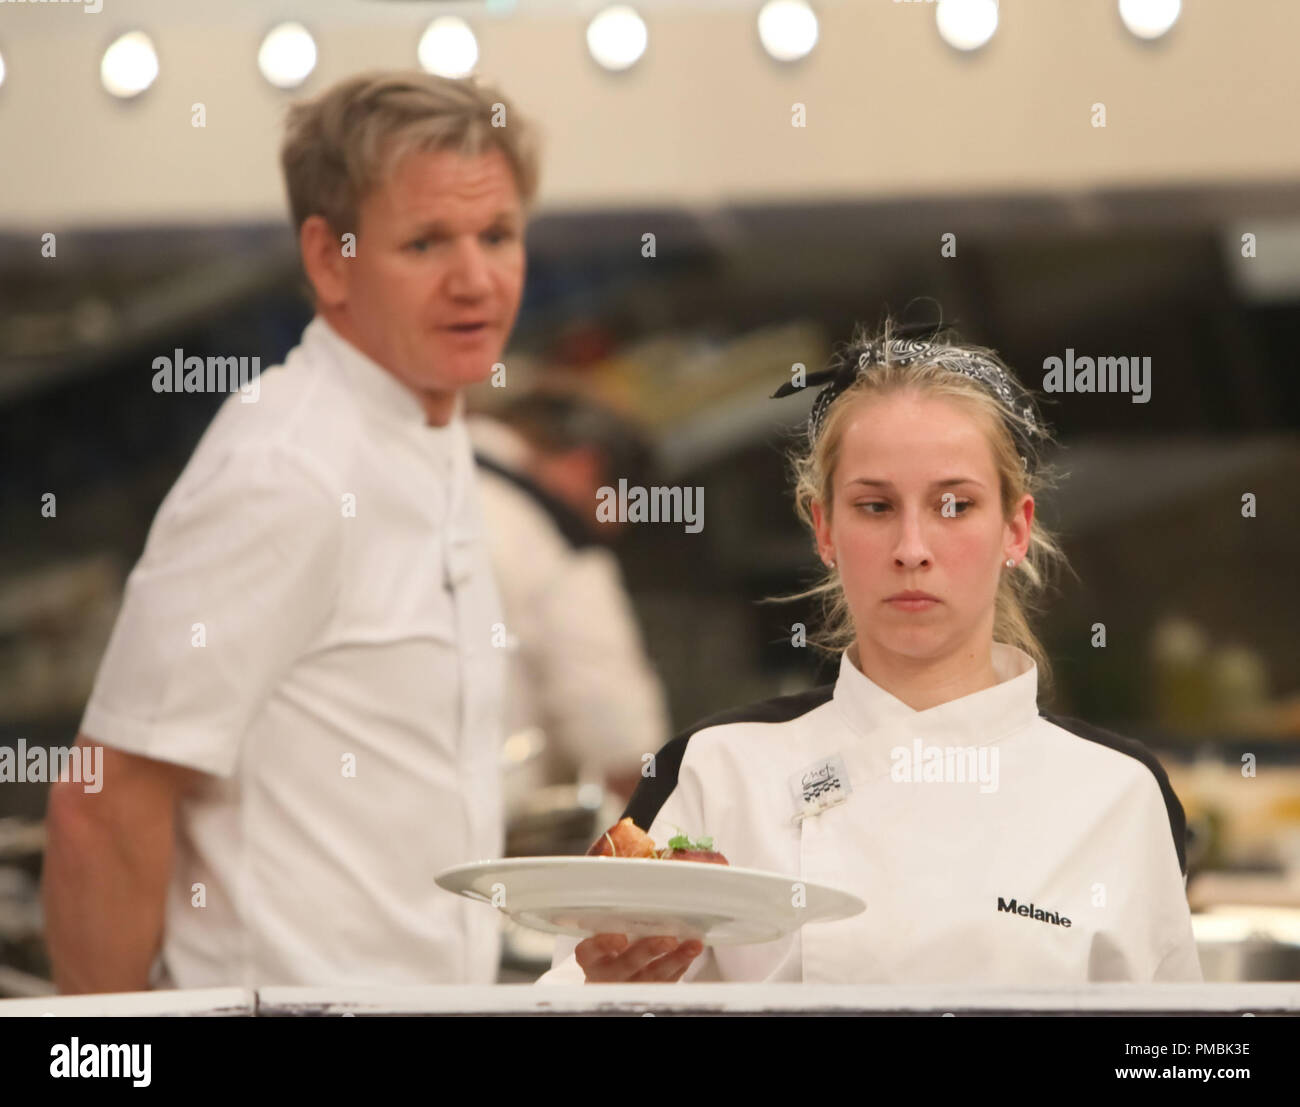 HELL'S KITCHEN: L-R: El Chef Ramsay y concursante Melanie durante el servicio de cena en "4 Chefs competir' episodio de Hell's Kitchen Foto de stock